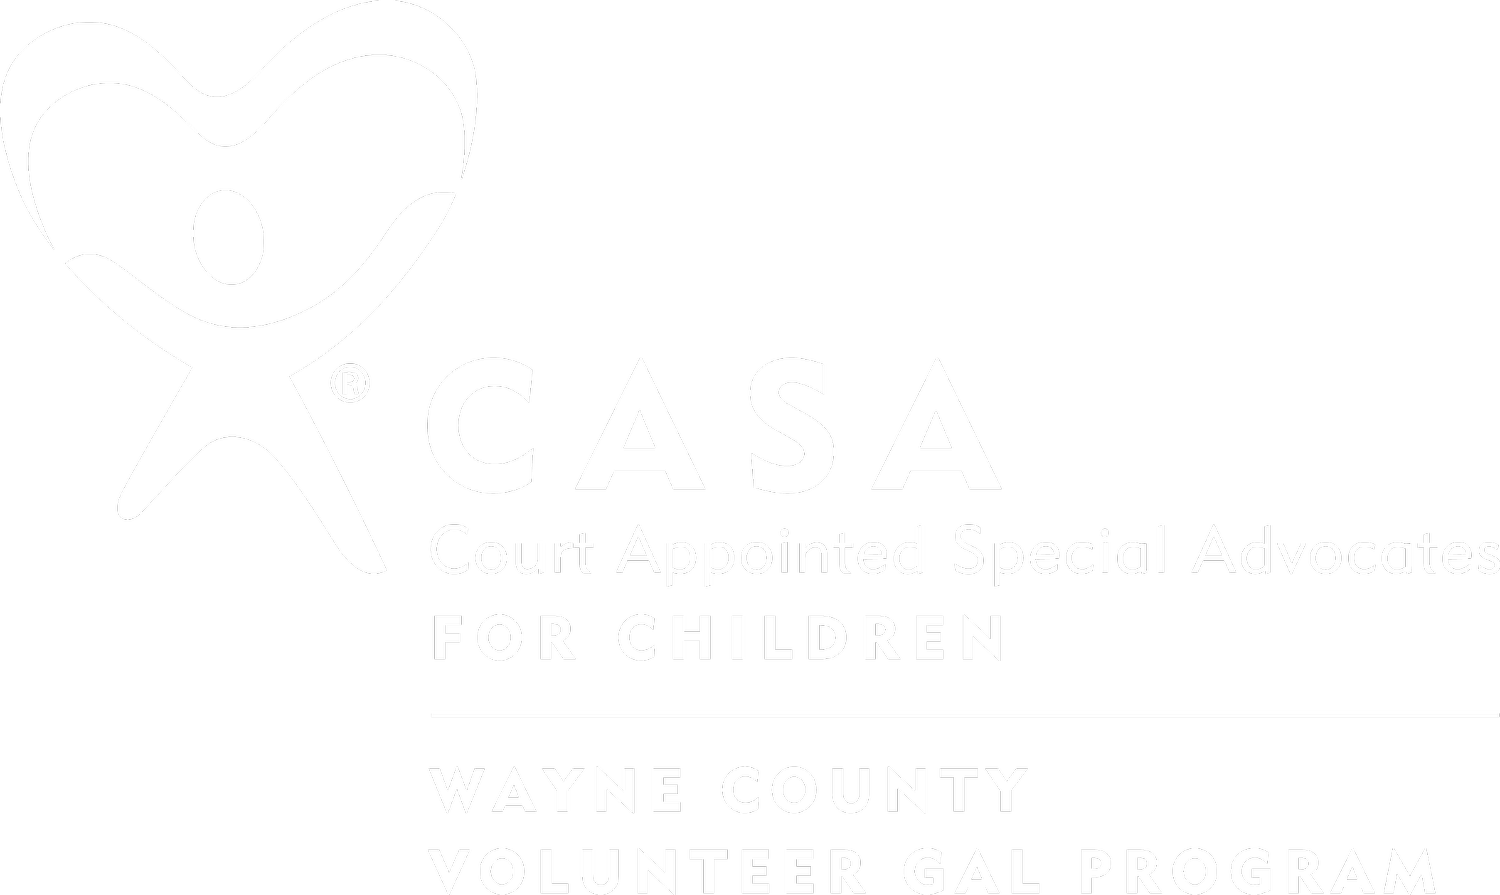 Wayne County CASA